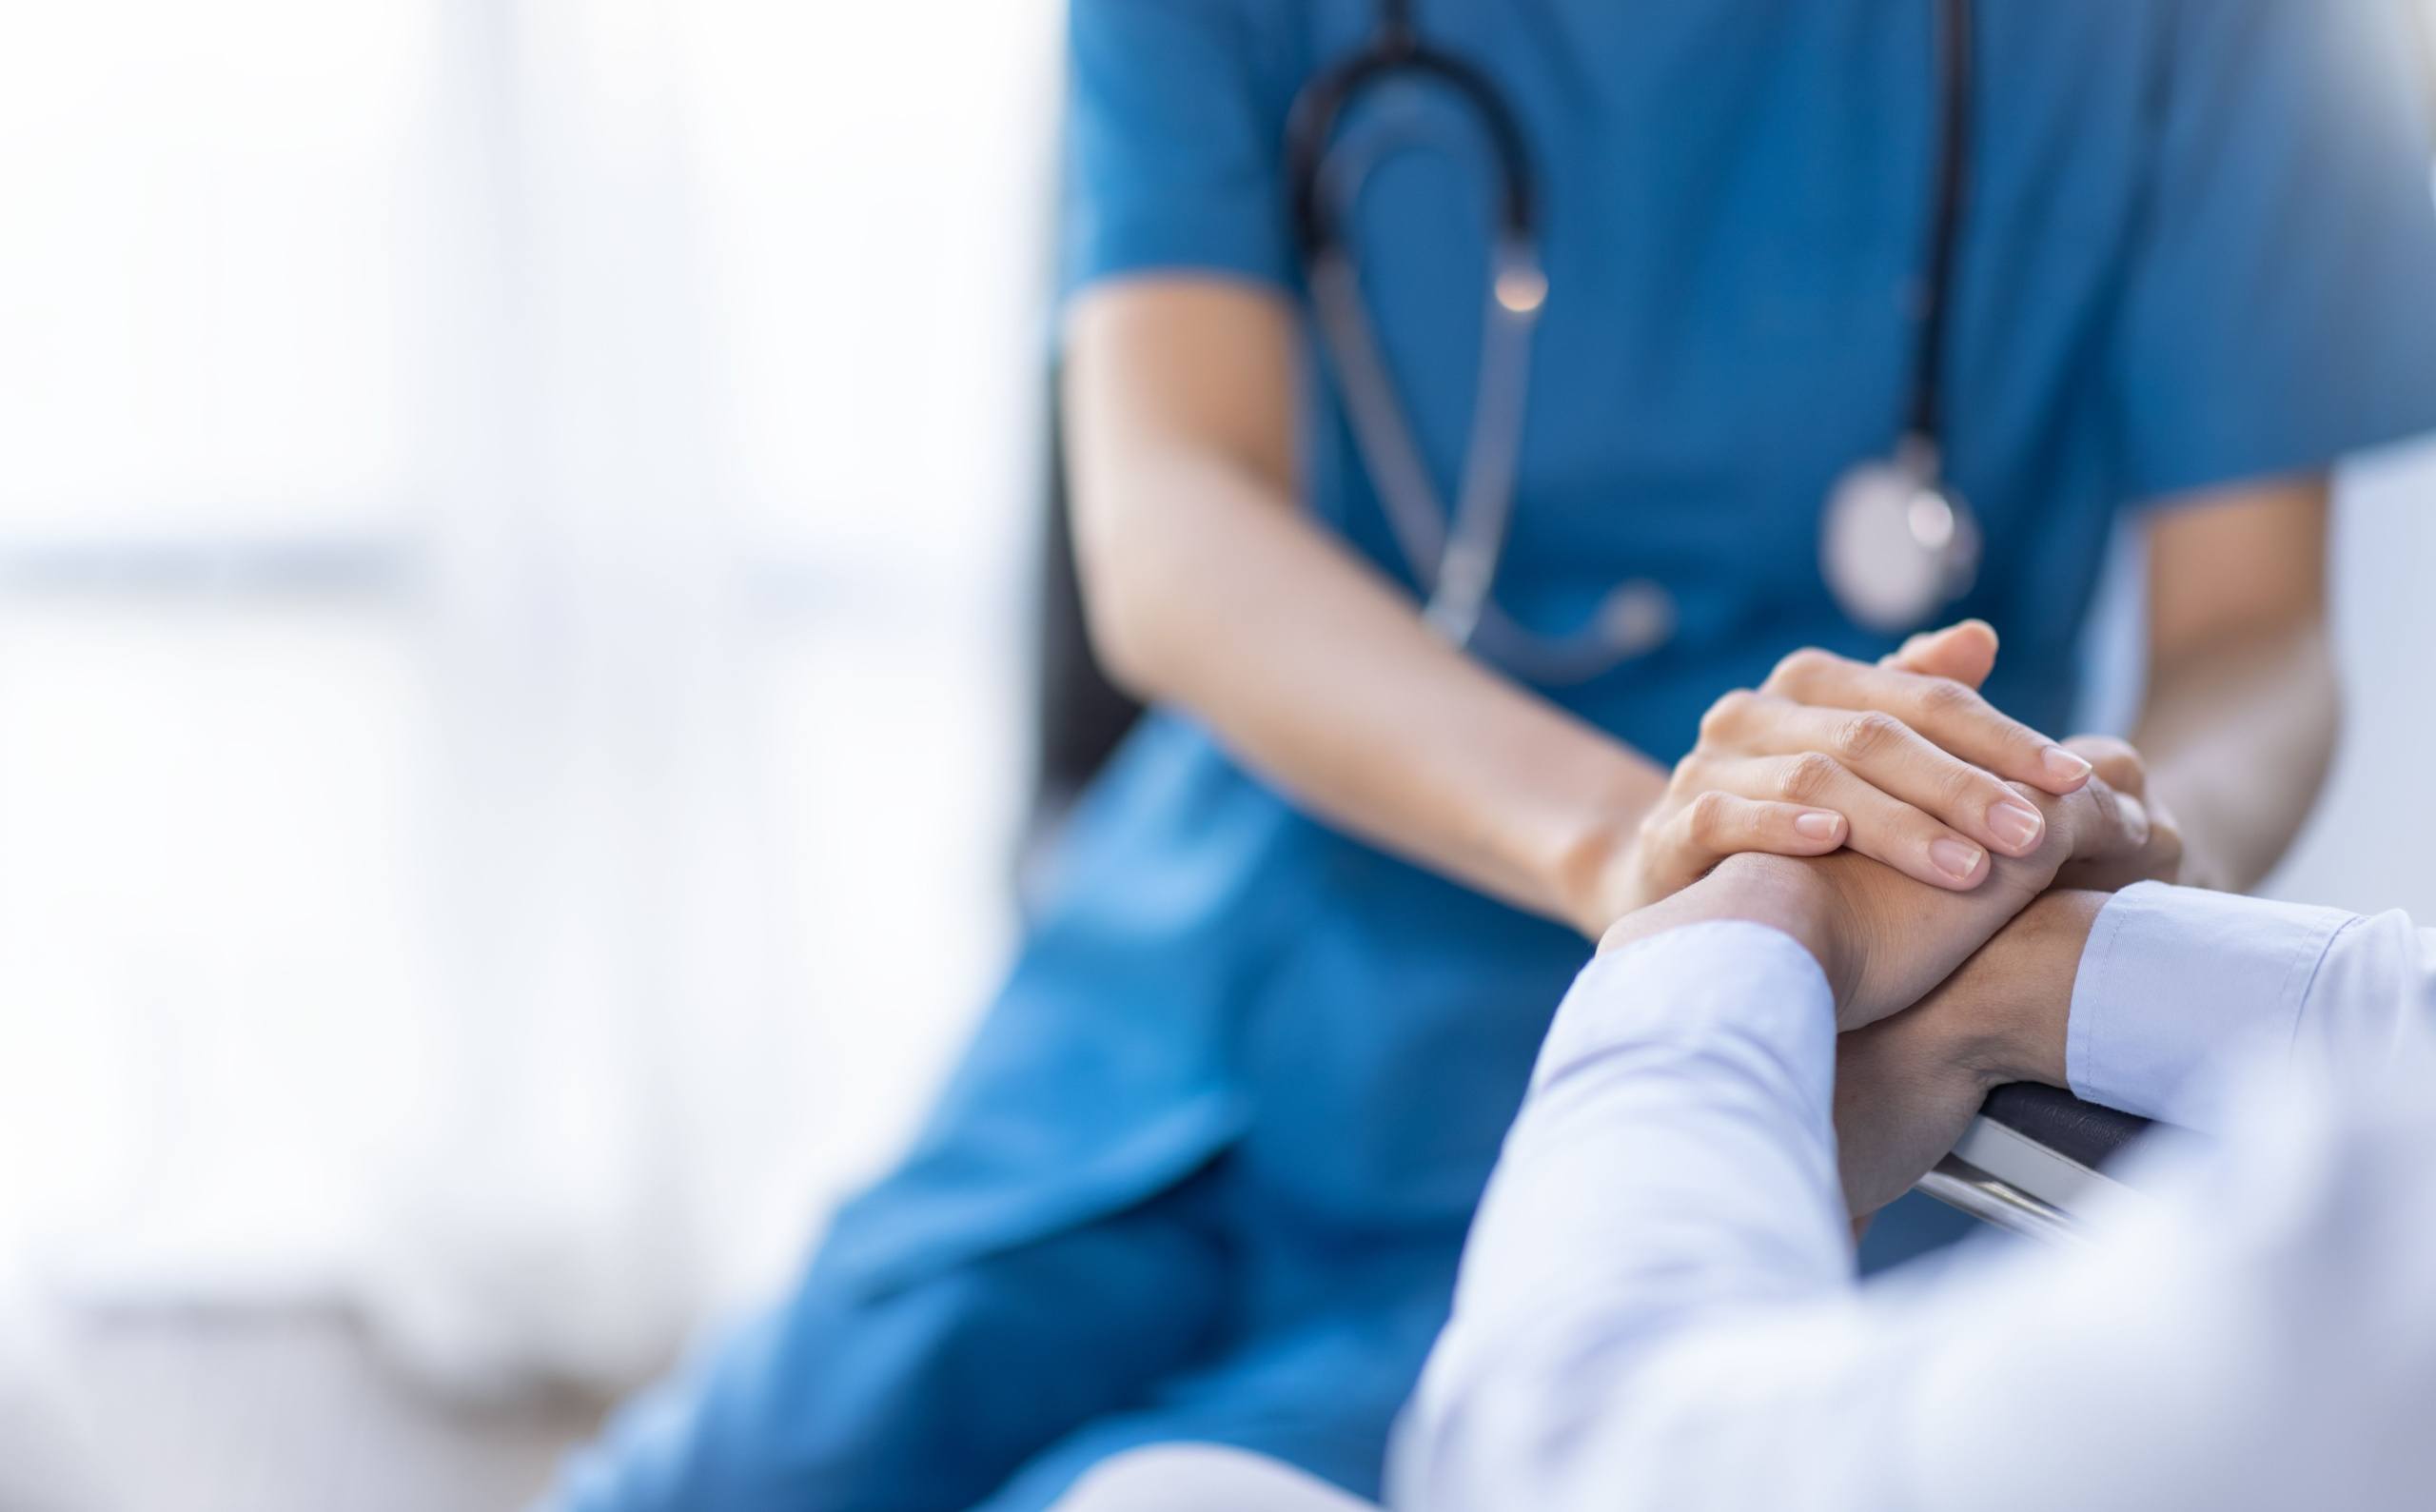 Nurse holding a patient’s hand